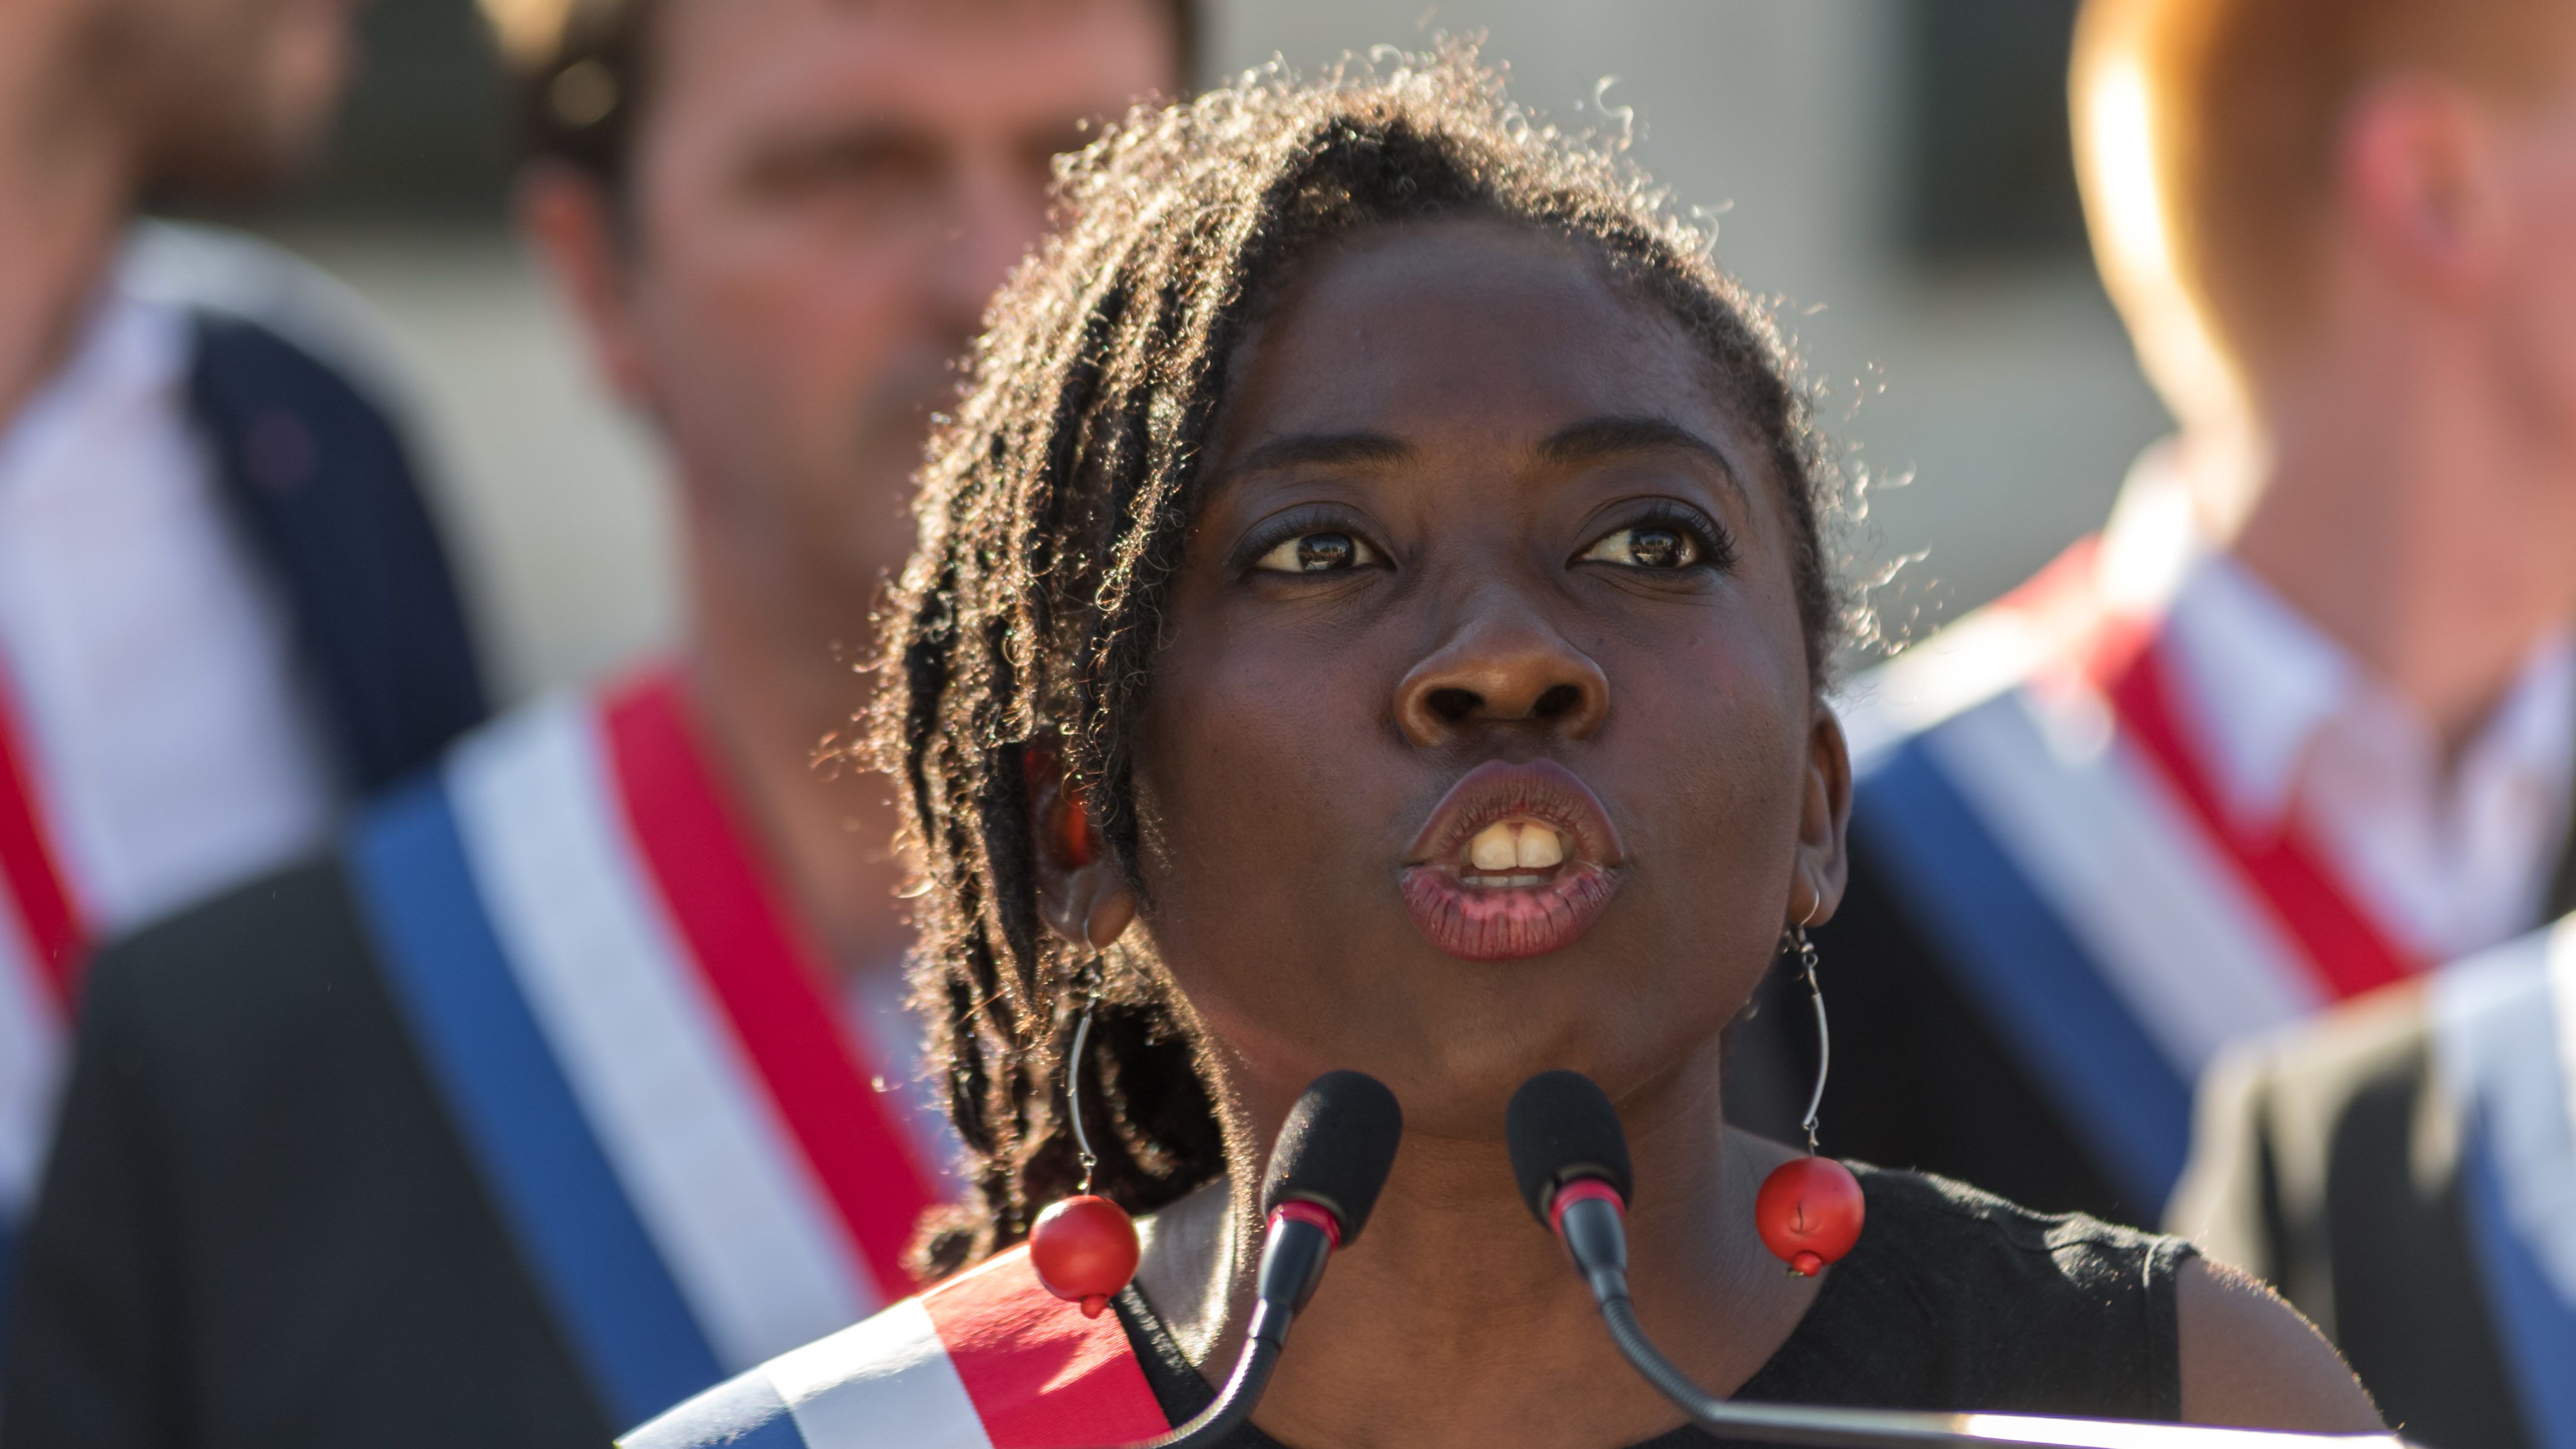 Rabszolgaként ábrázolták Daniele Obono fekete bőrű képviselőnőt egy francia hetilapban